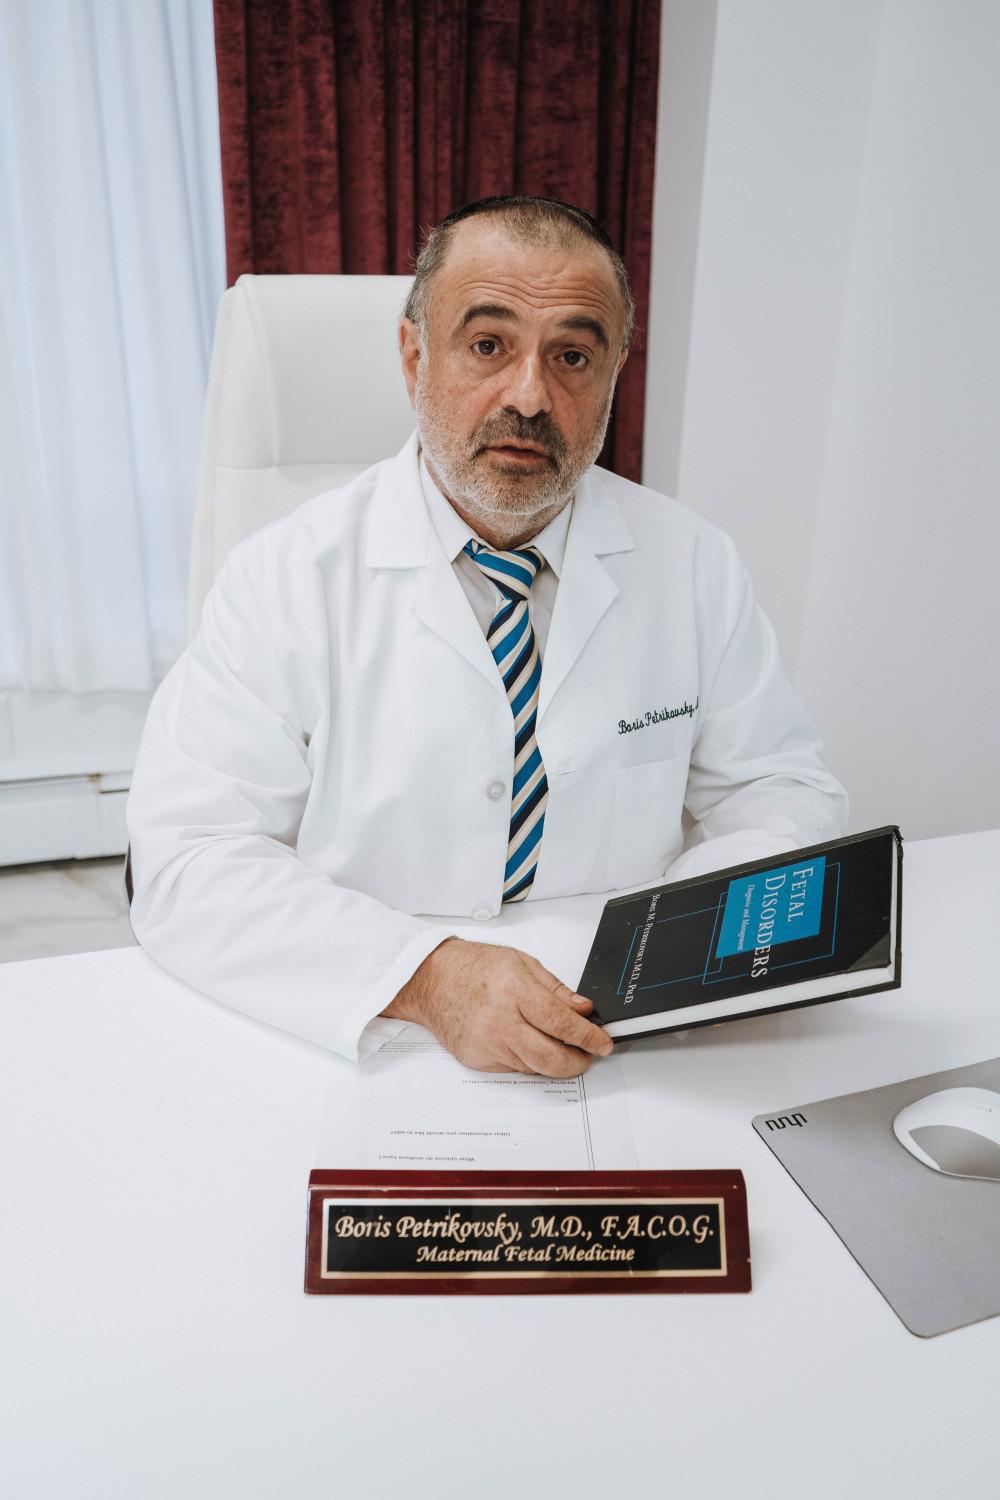 Русскоговорящий врач